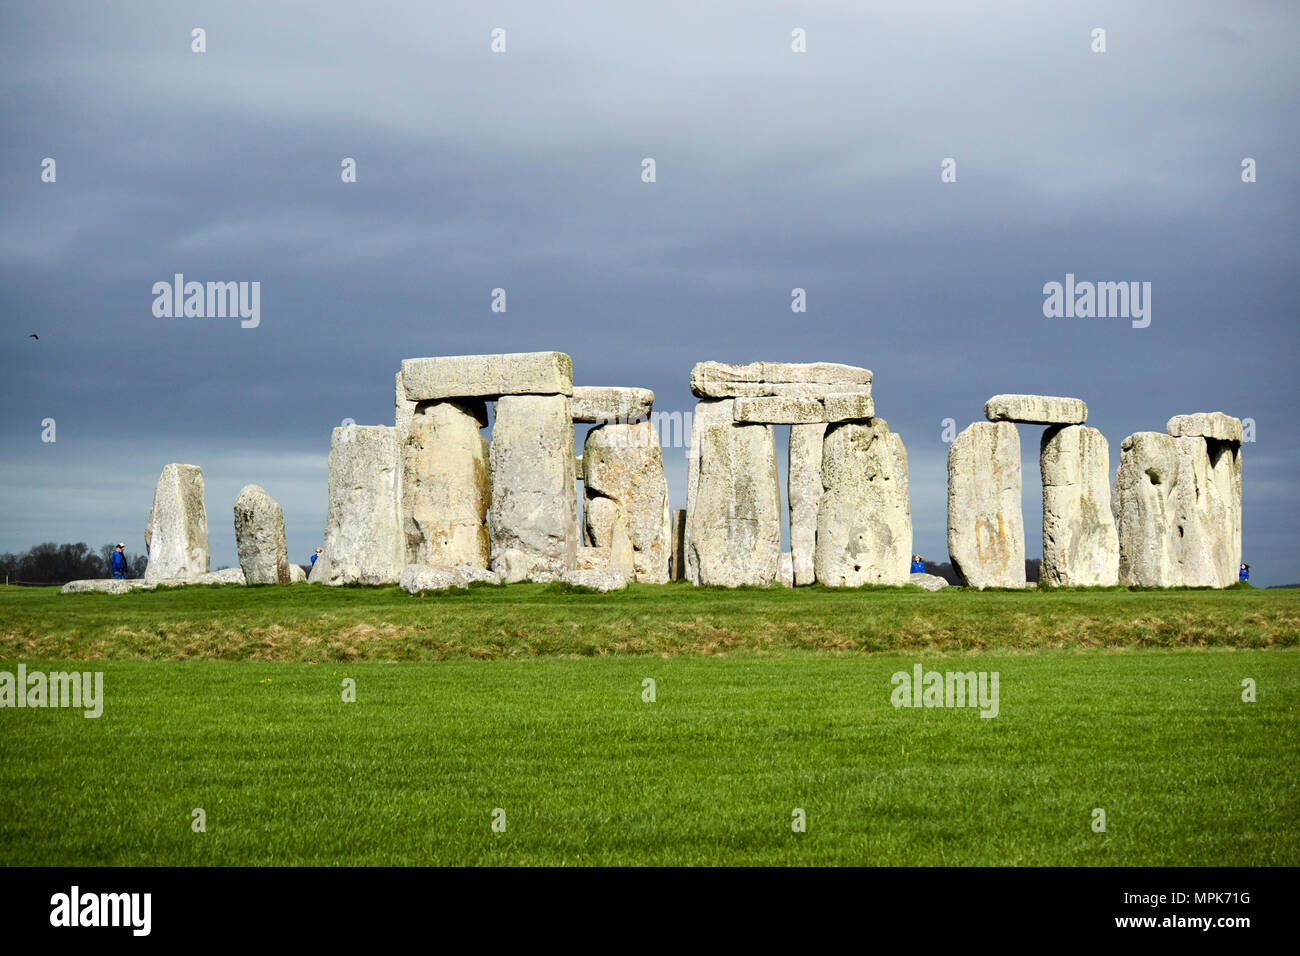 Avis du cercle de sarsen pierres avec linteau stones stonehenge wiltshire england uk Banque D'Images